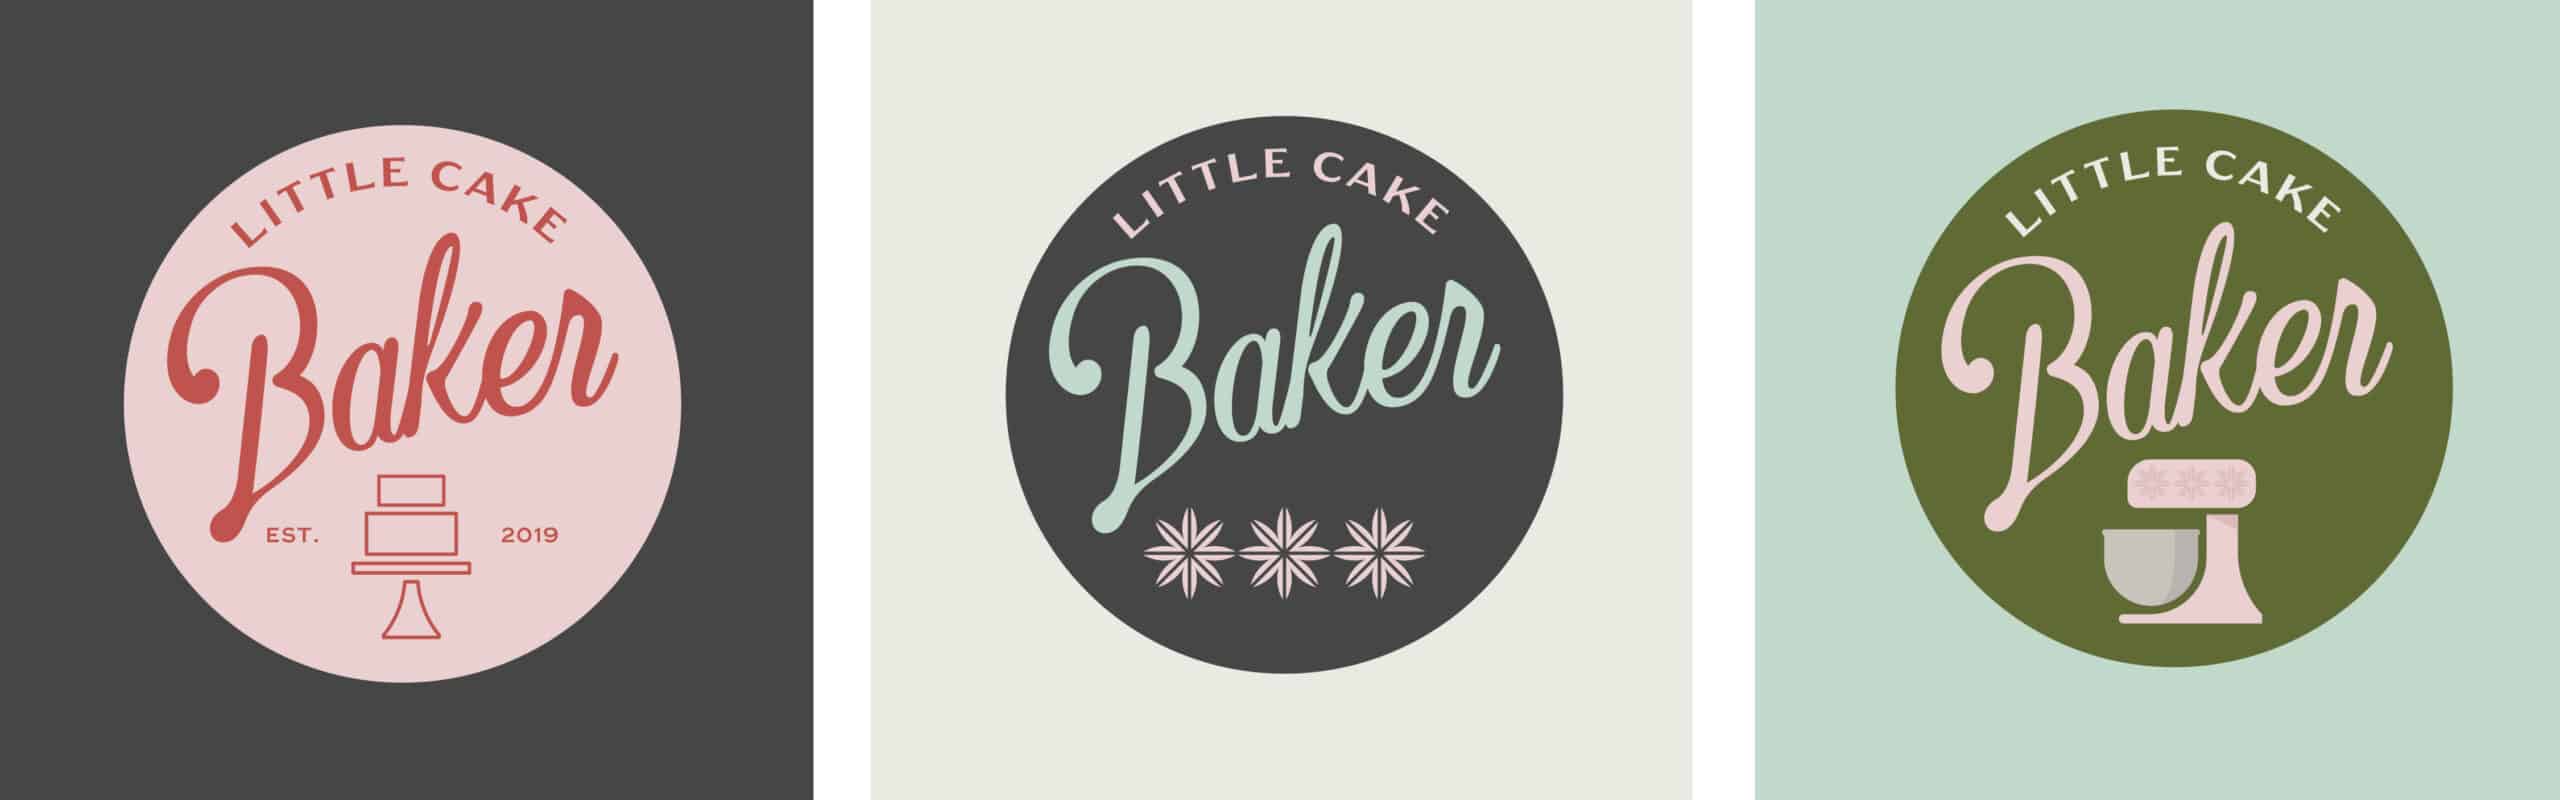 Little_Cake_Baker_Branding_By_Stellen_Design_Logo Designs